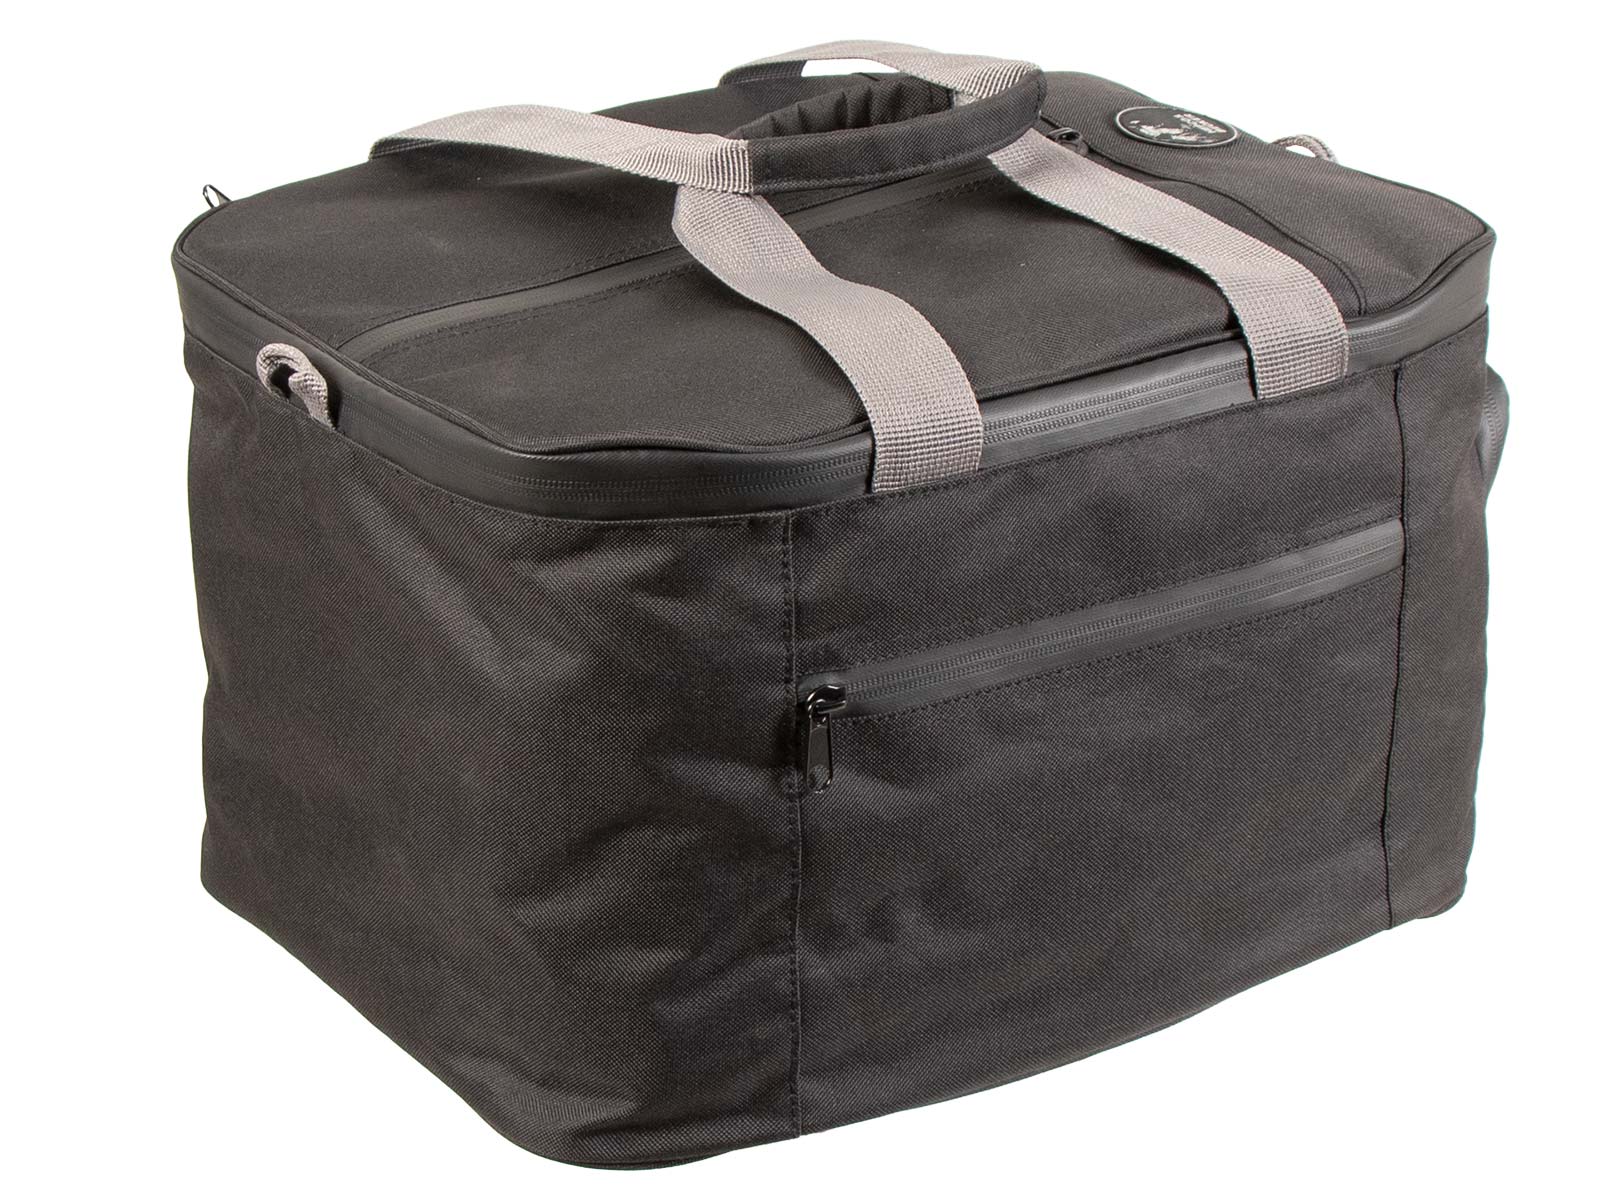 Inner bag for Topcase Xplorer 45 / Xceed 45